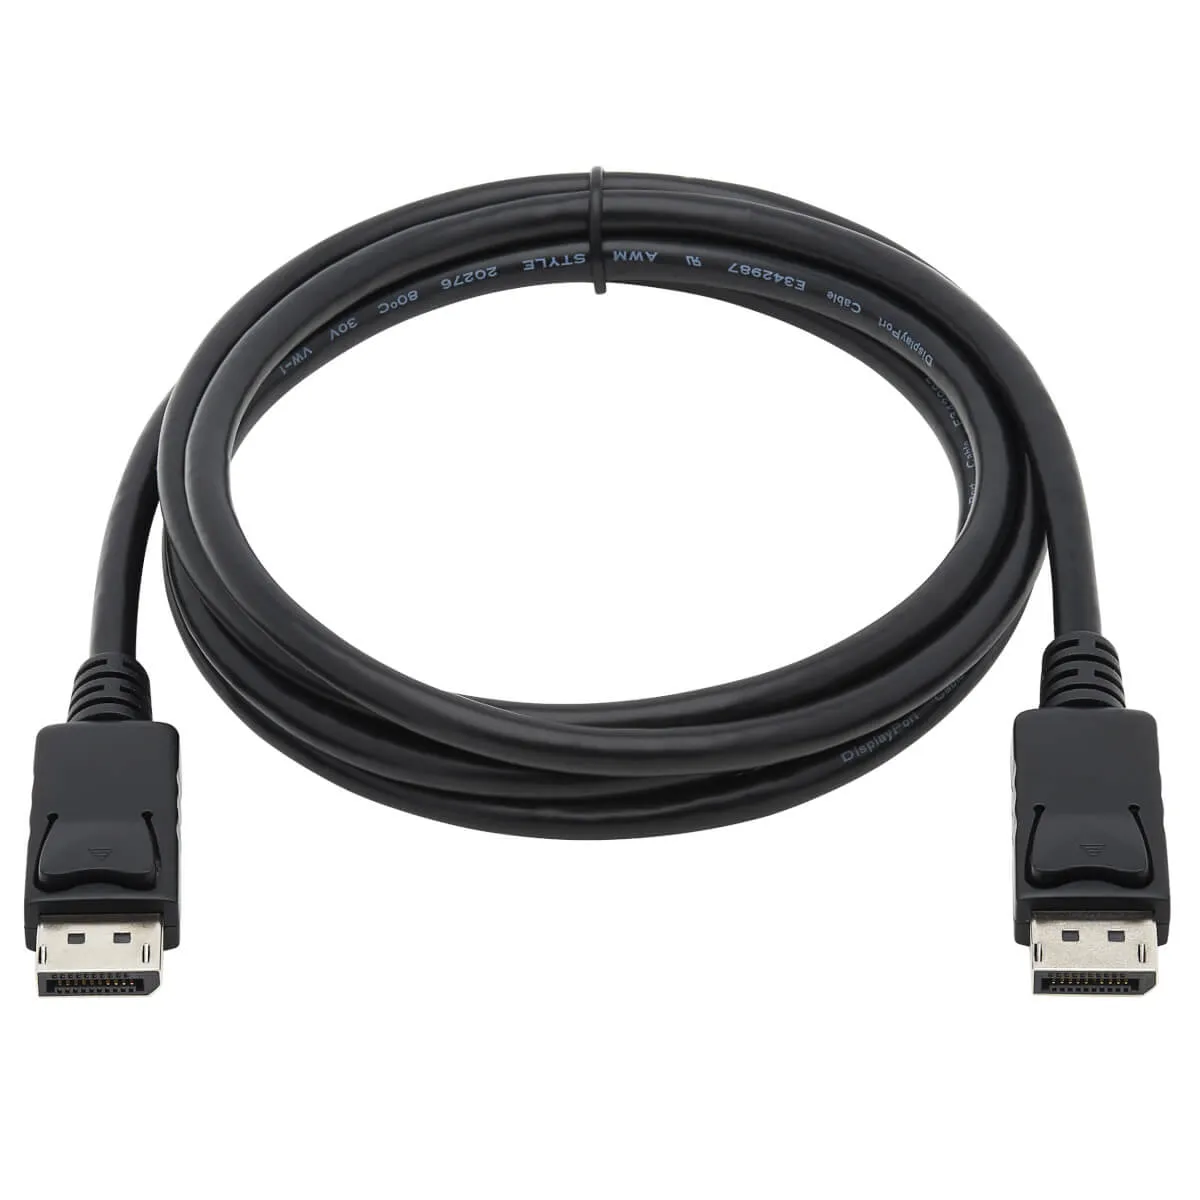 Vente EATON TRIPPLITE DisplayPort Cable with Latches 4K 60Hz Tripp Lite au meilleur prix - visuel 6